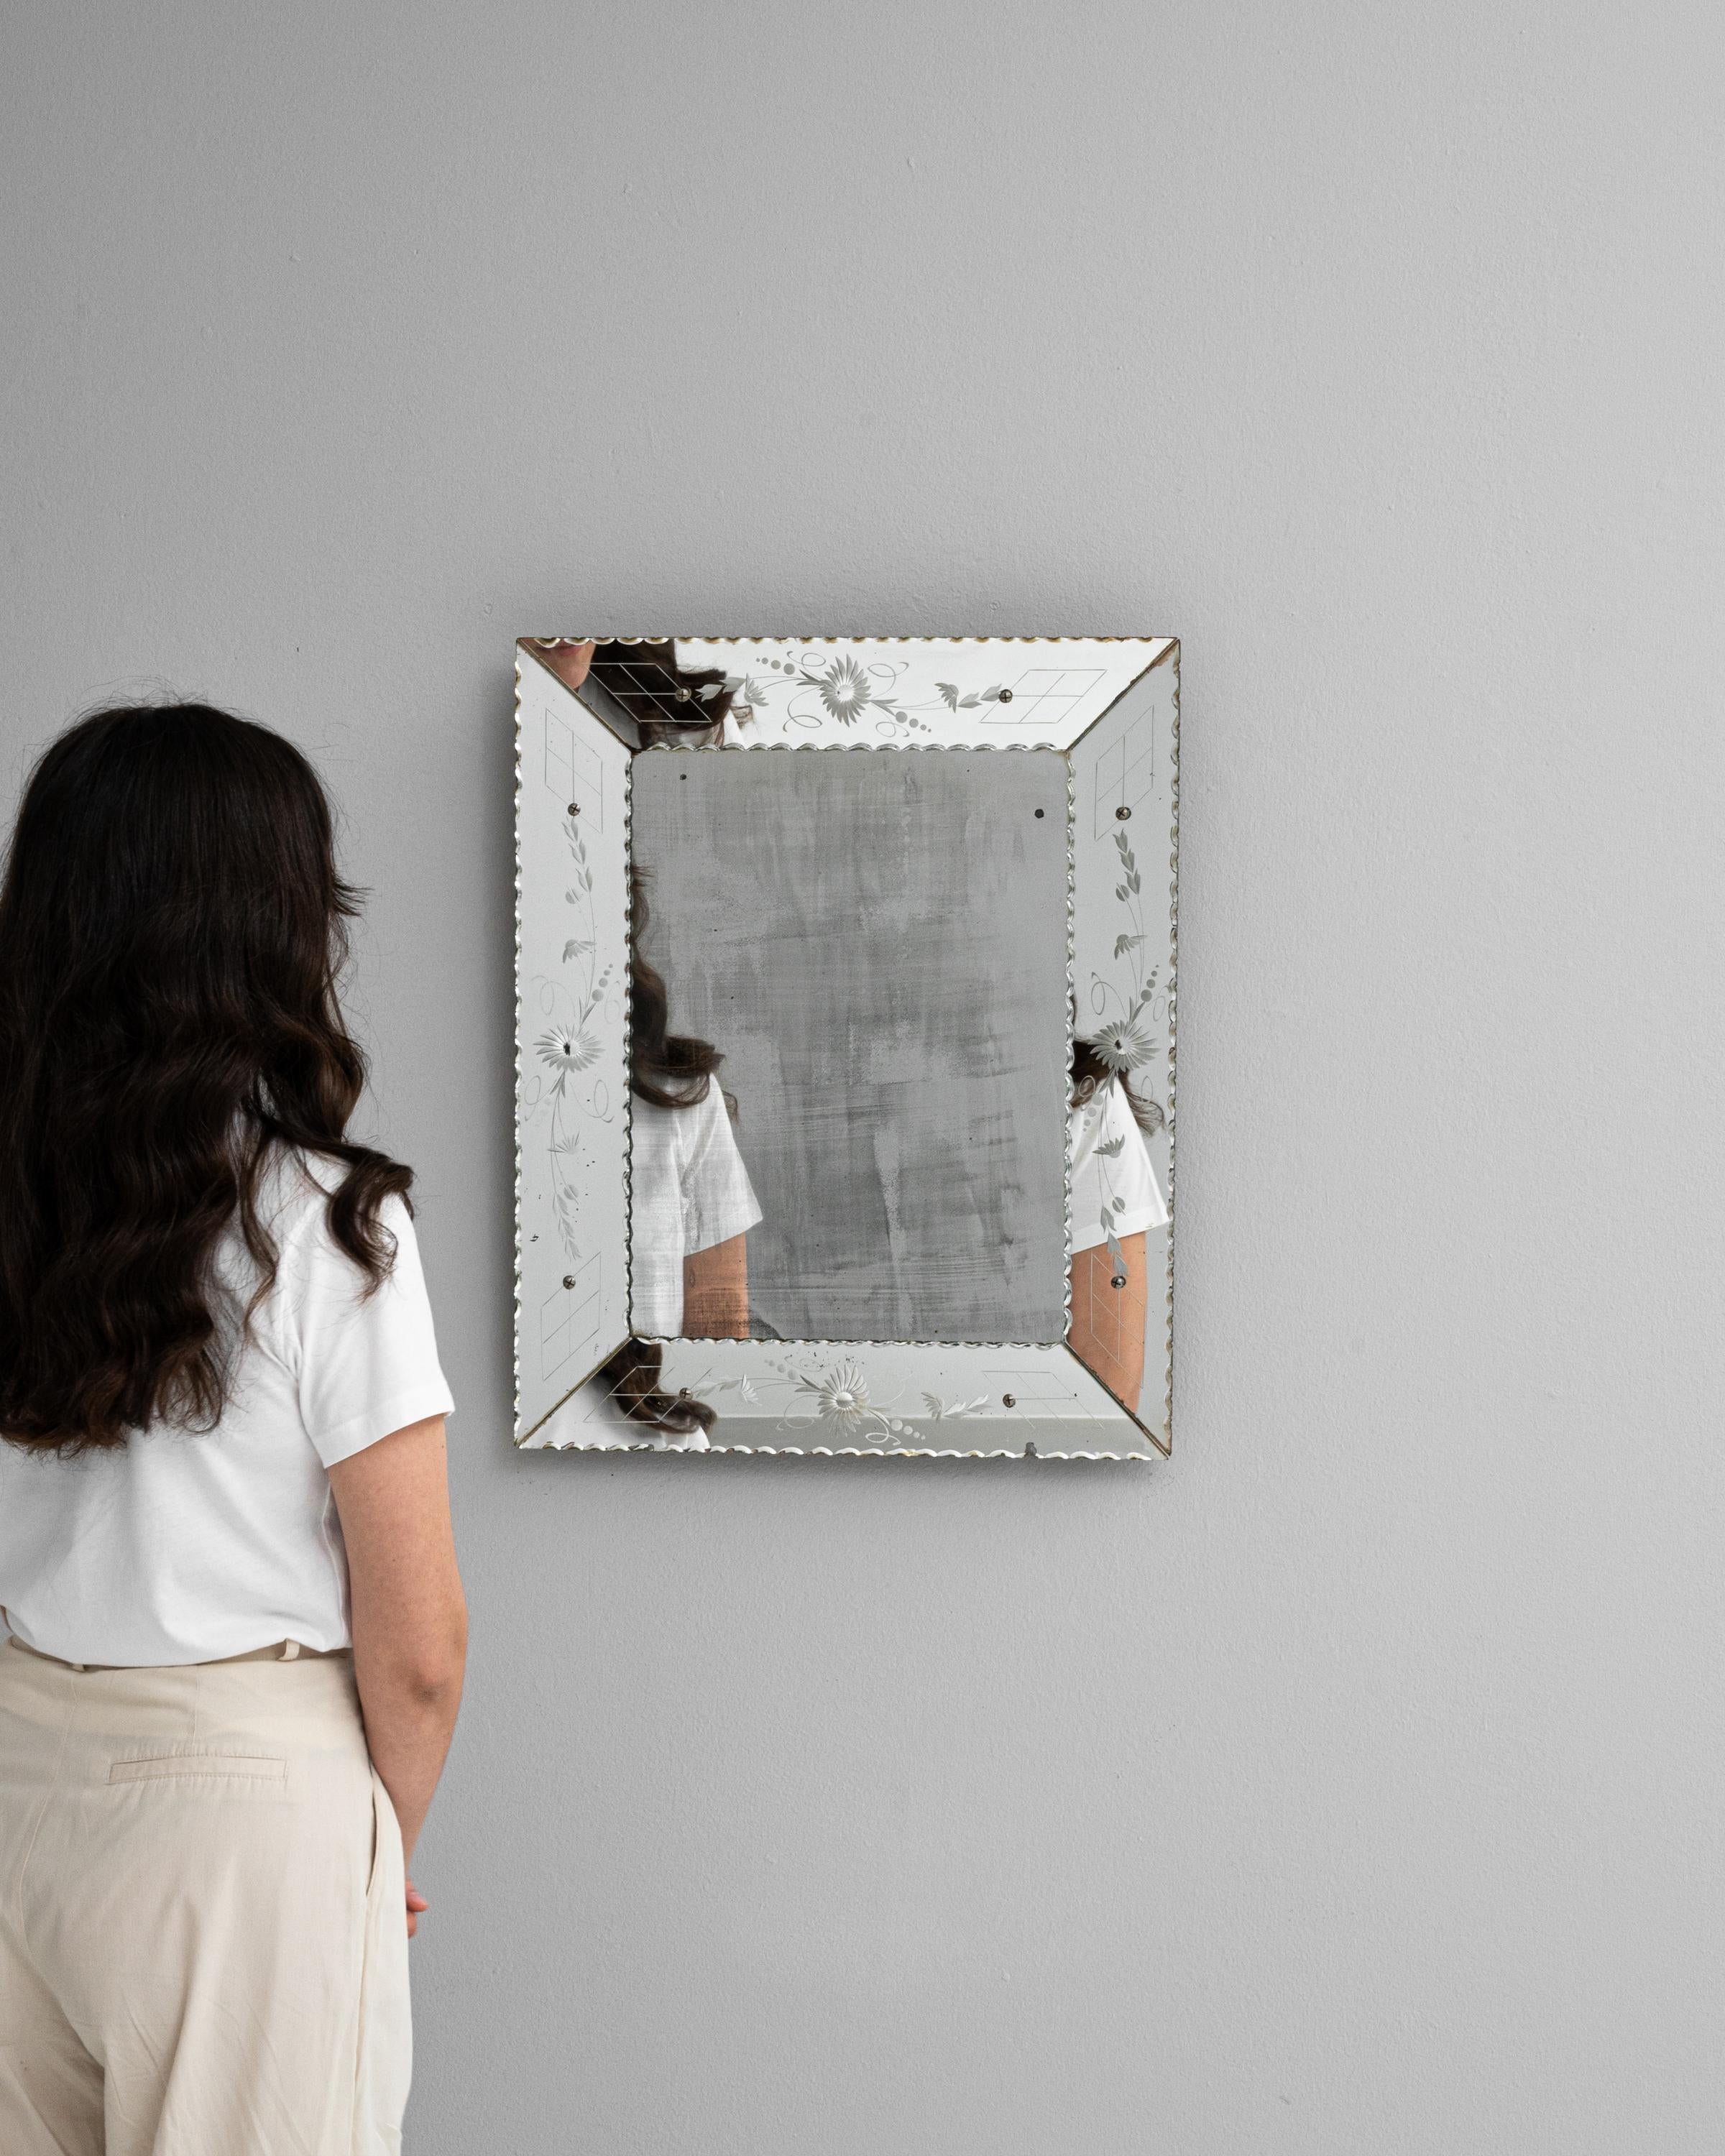 Découvrez le charme du design italien avec cet exquis miroir du XXe siècle, qui témoigne d'une élégance intemporelle. Sa surface réfléchissante, bordée d'un cadre délicatement gravé et orné de subtils motifs floraux, capture non seulement votre